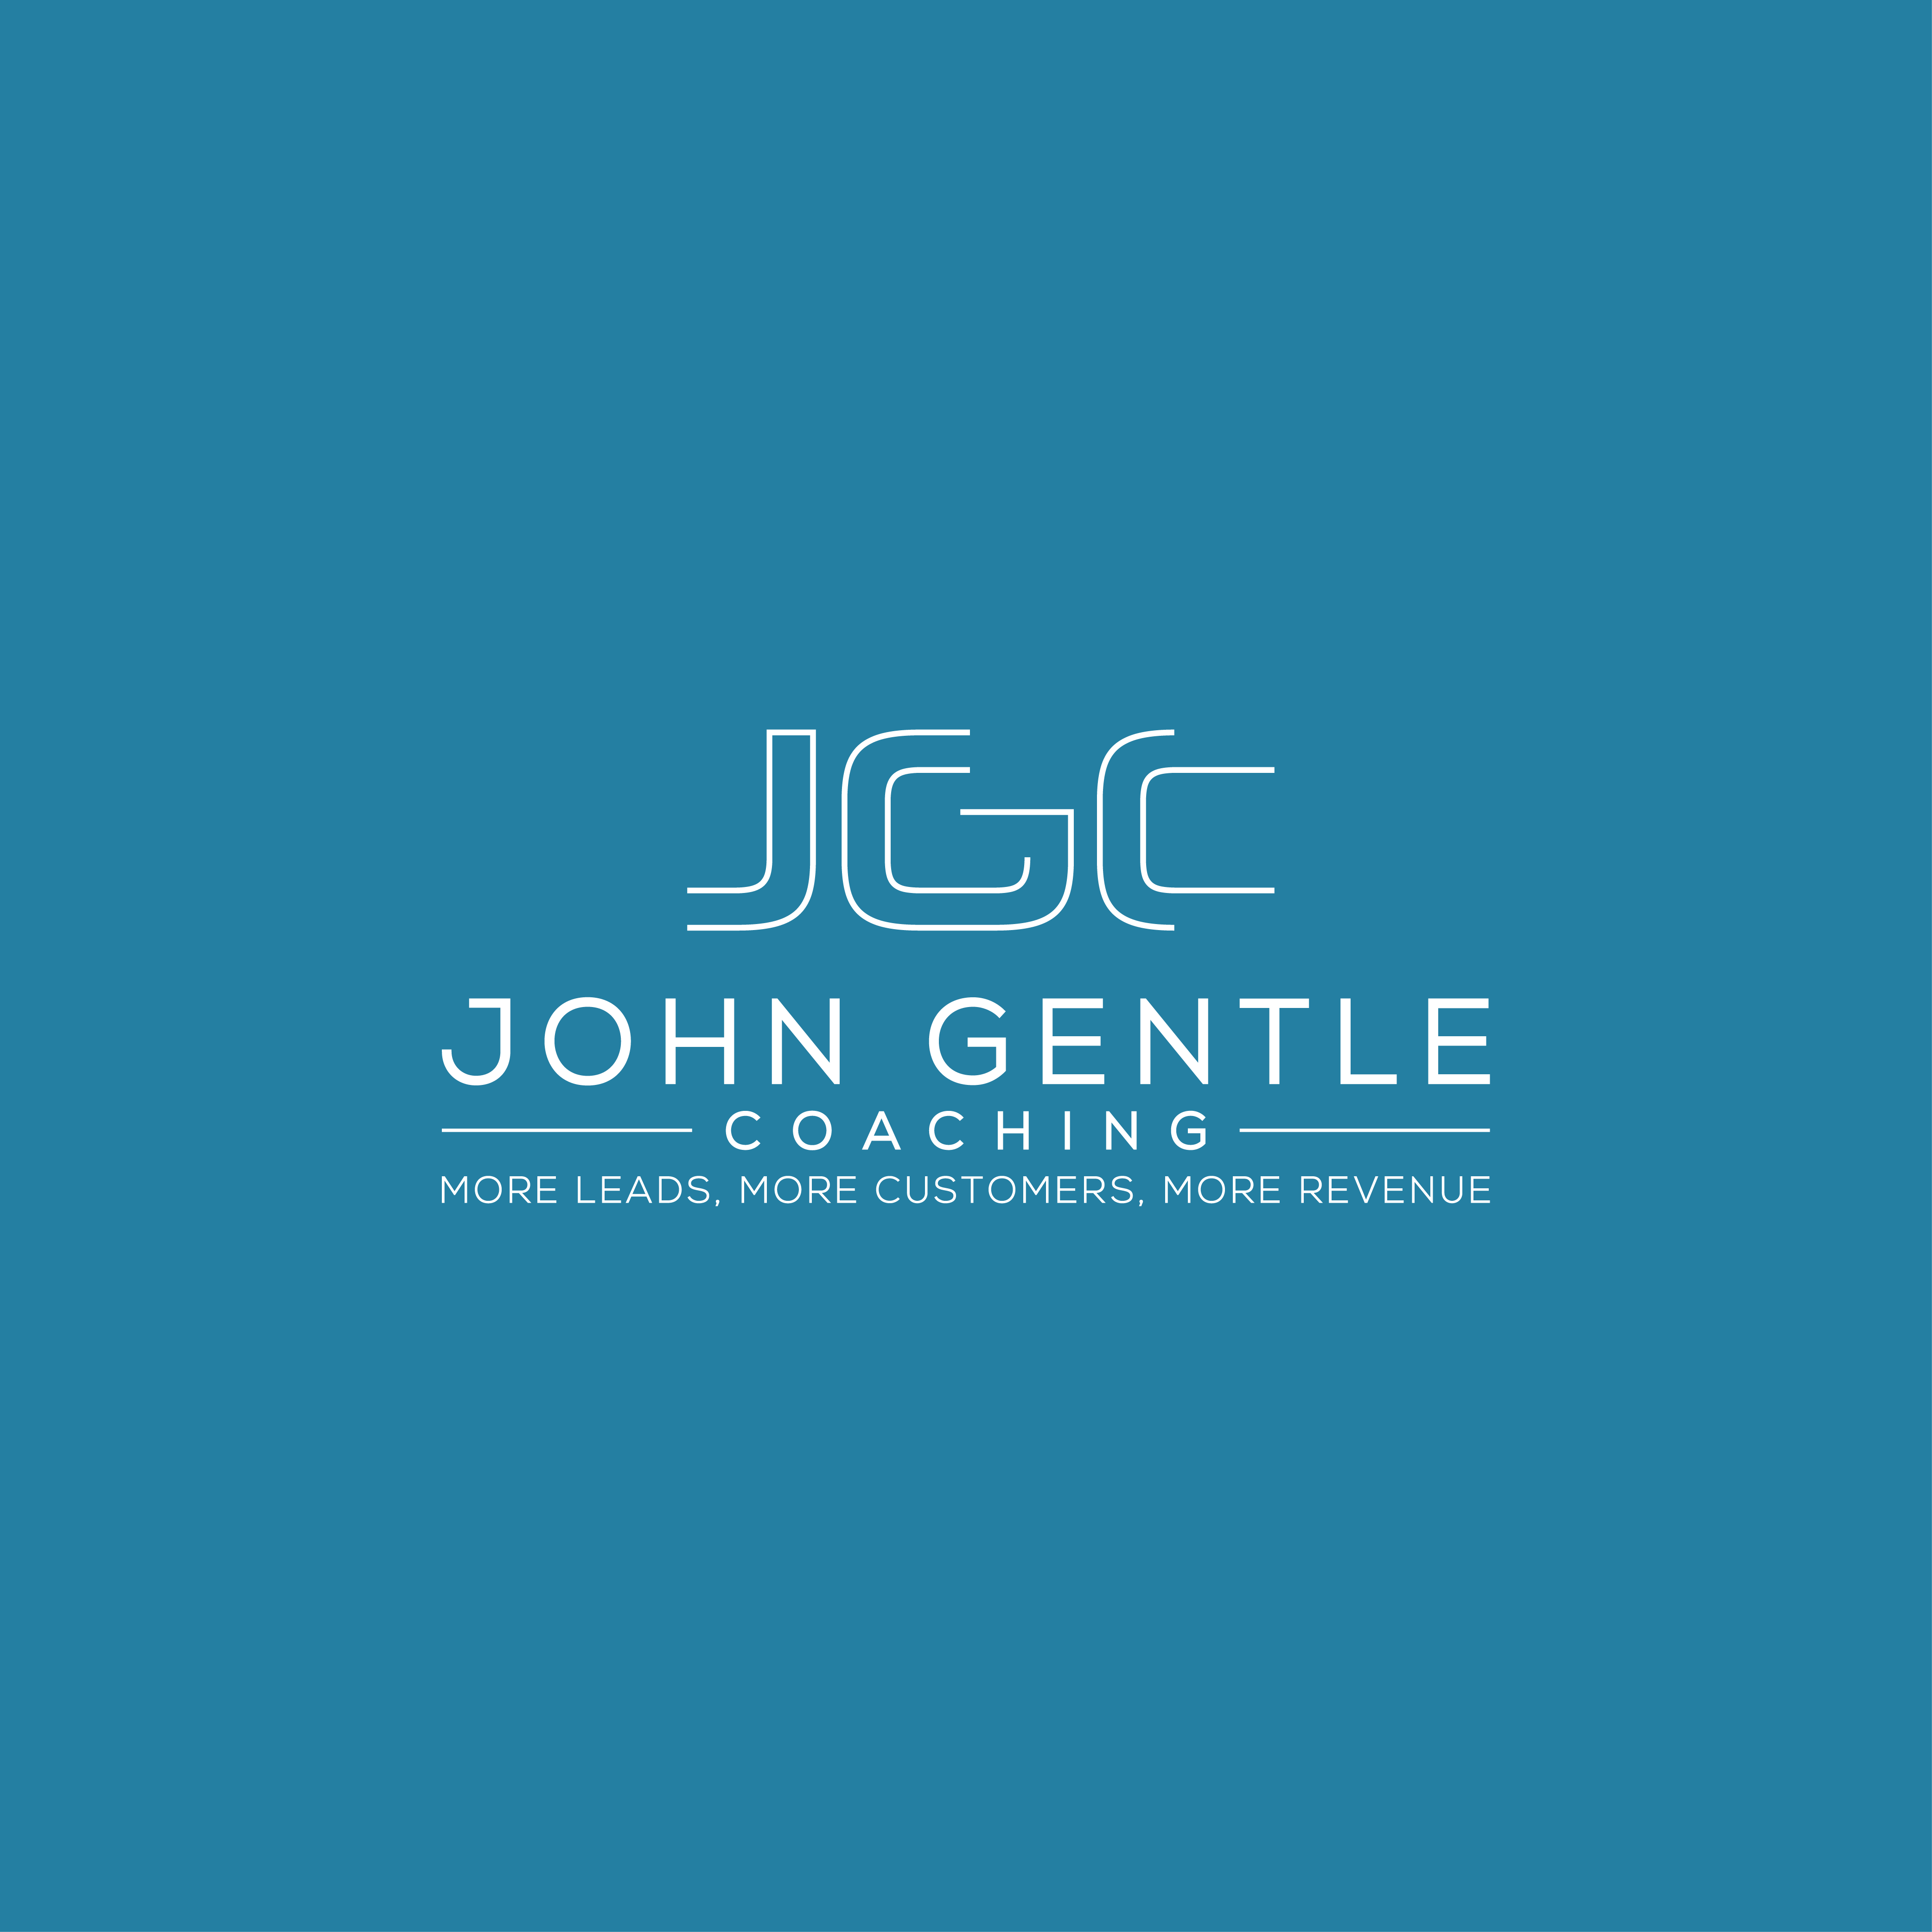 John Gentle Coaching